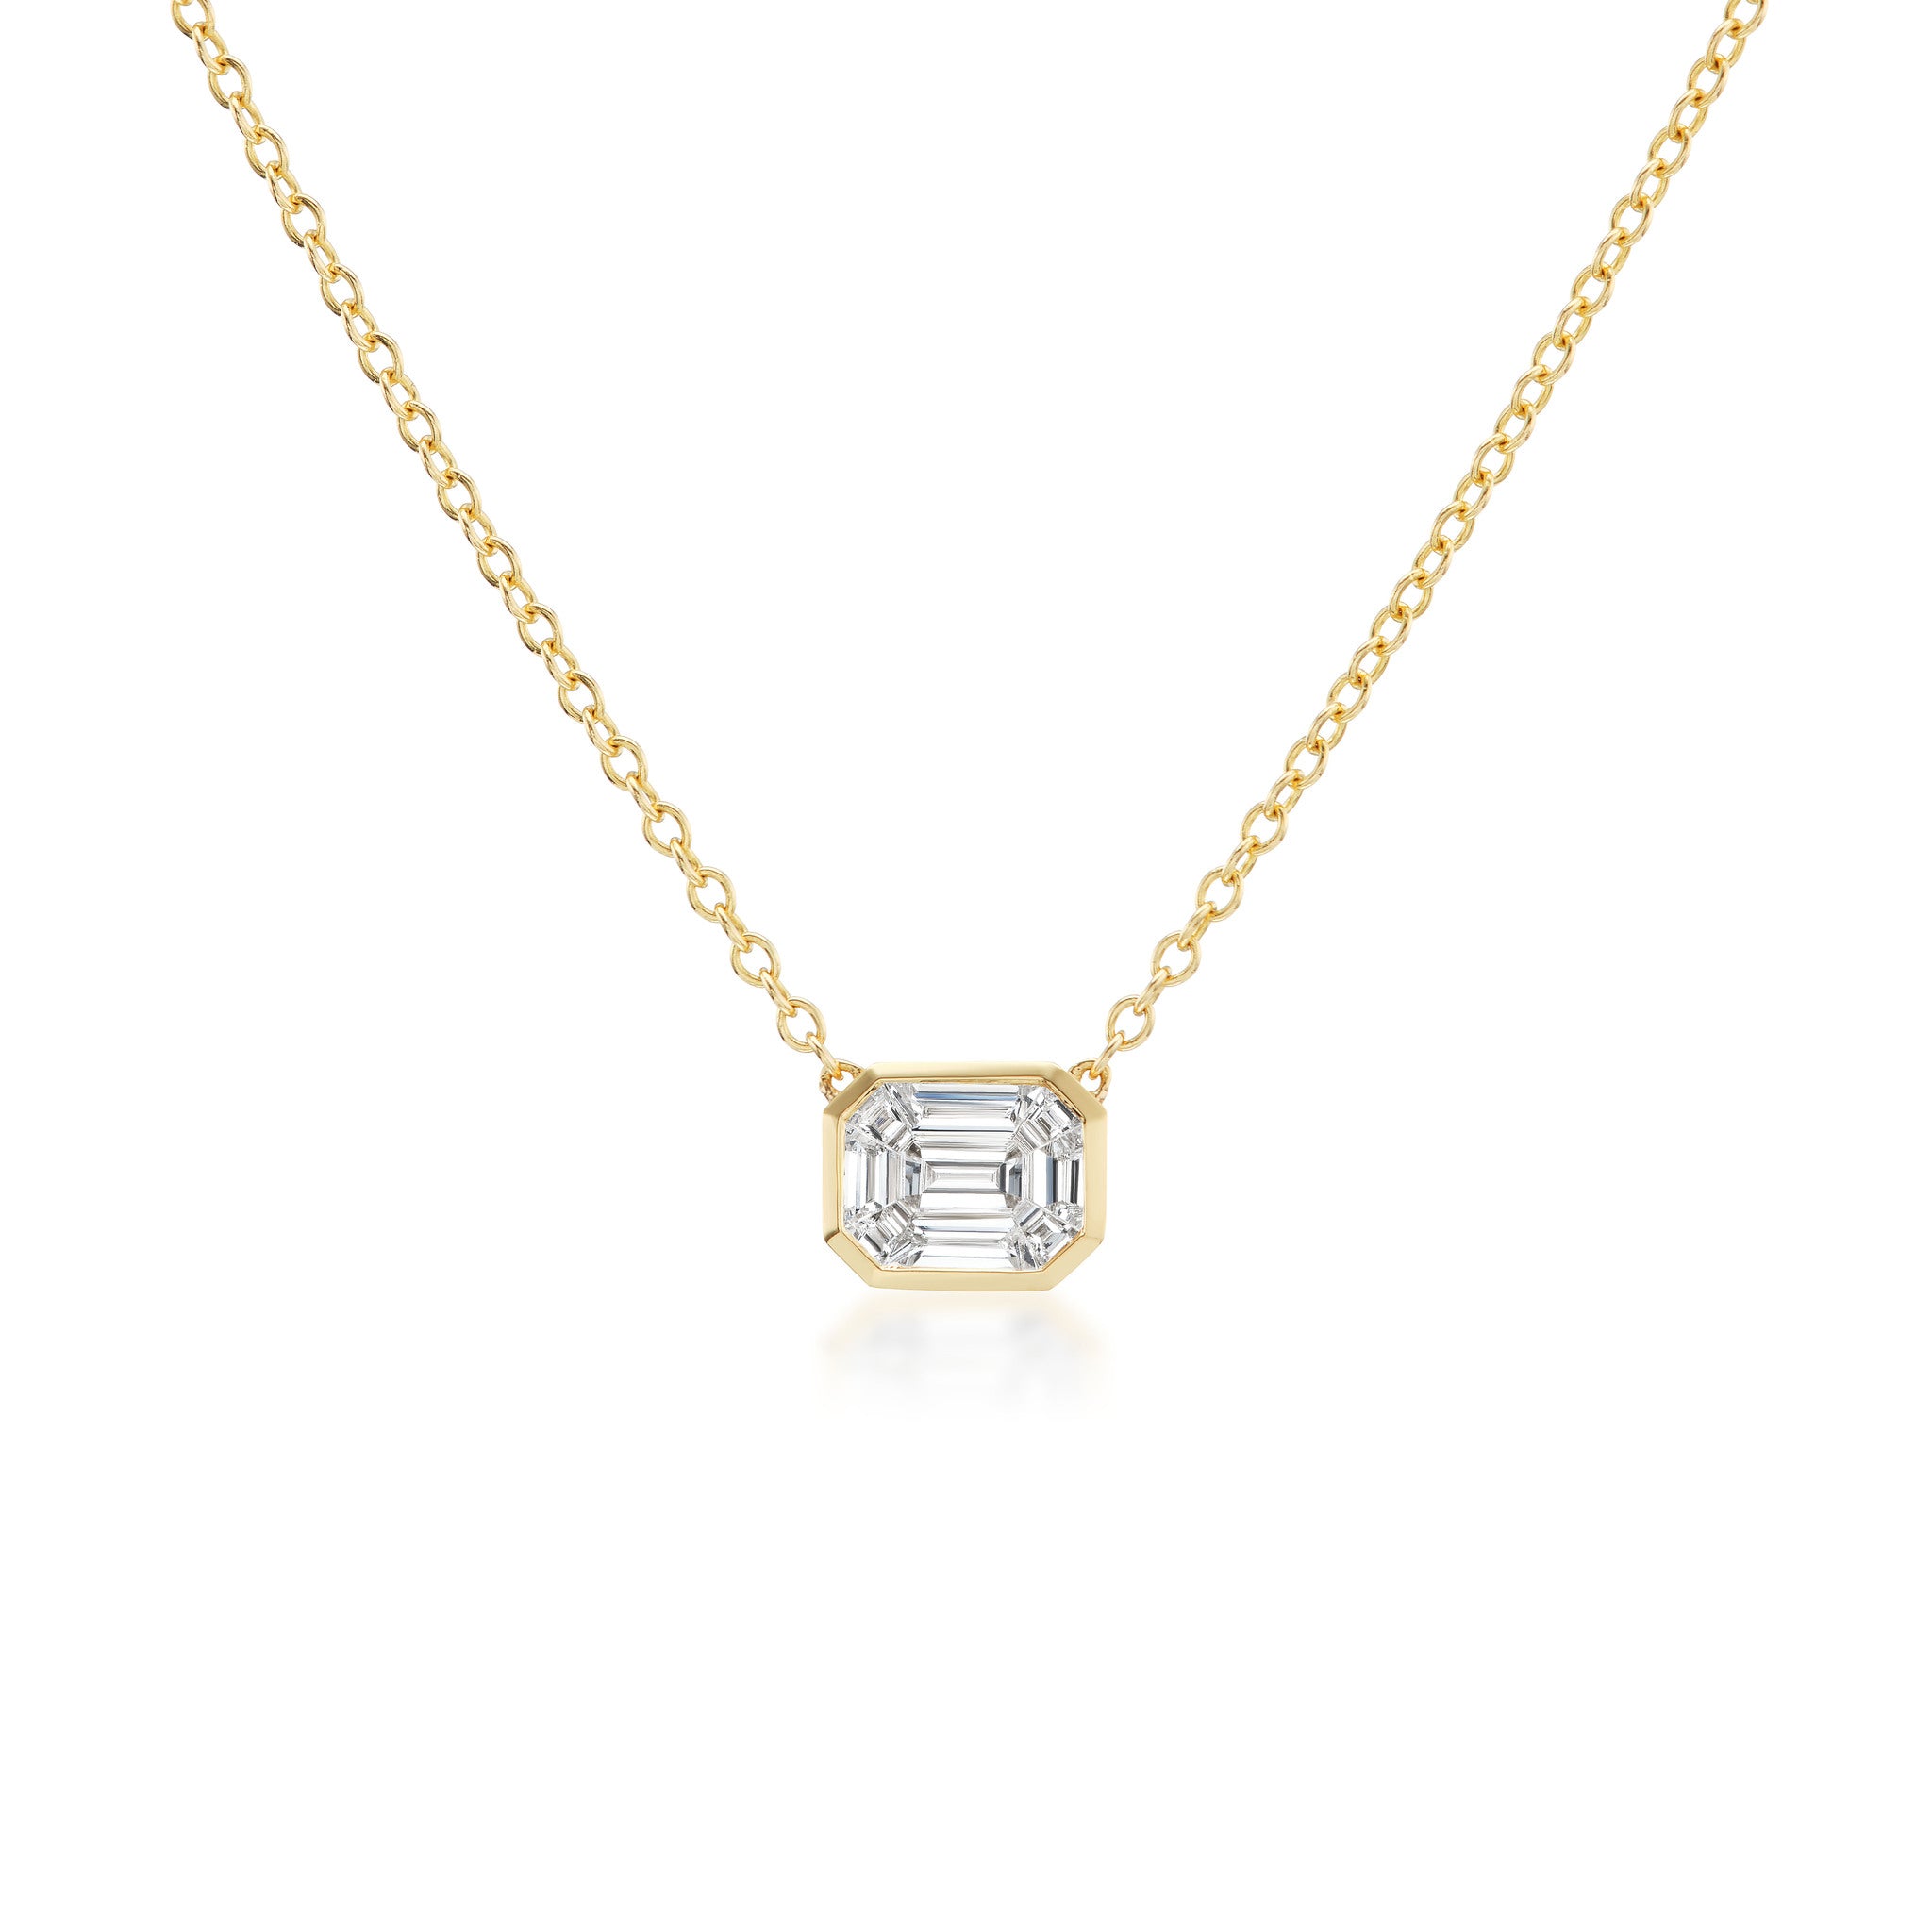 The Merissa Diamond Pendant